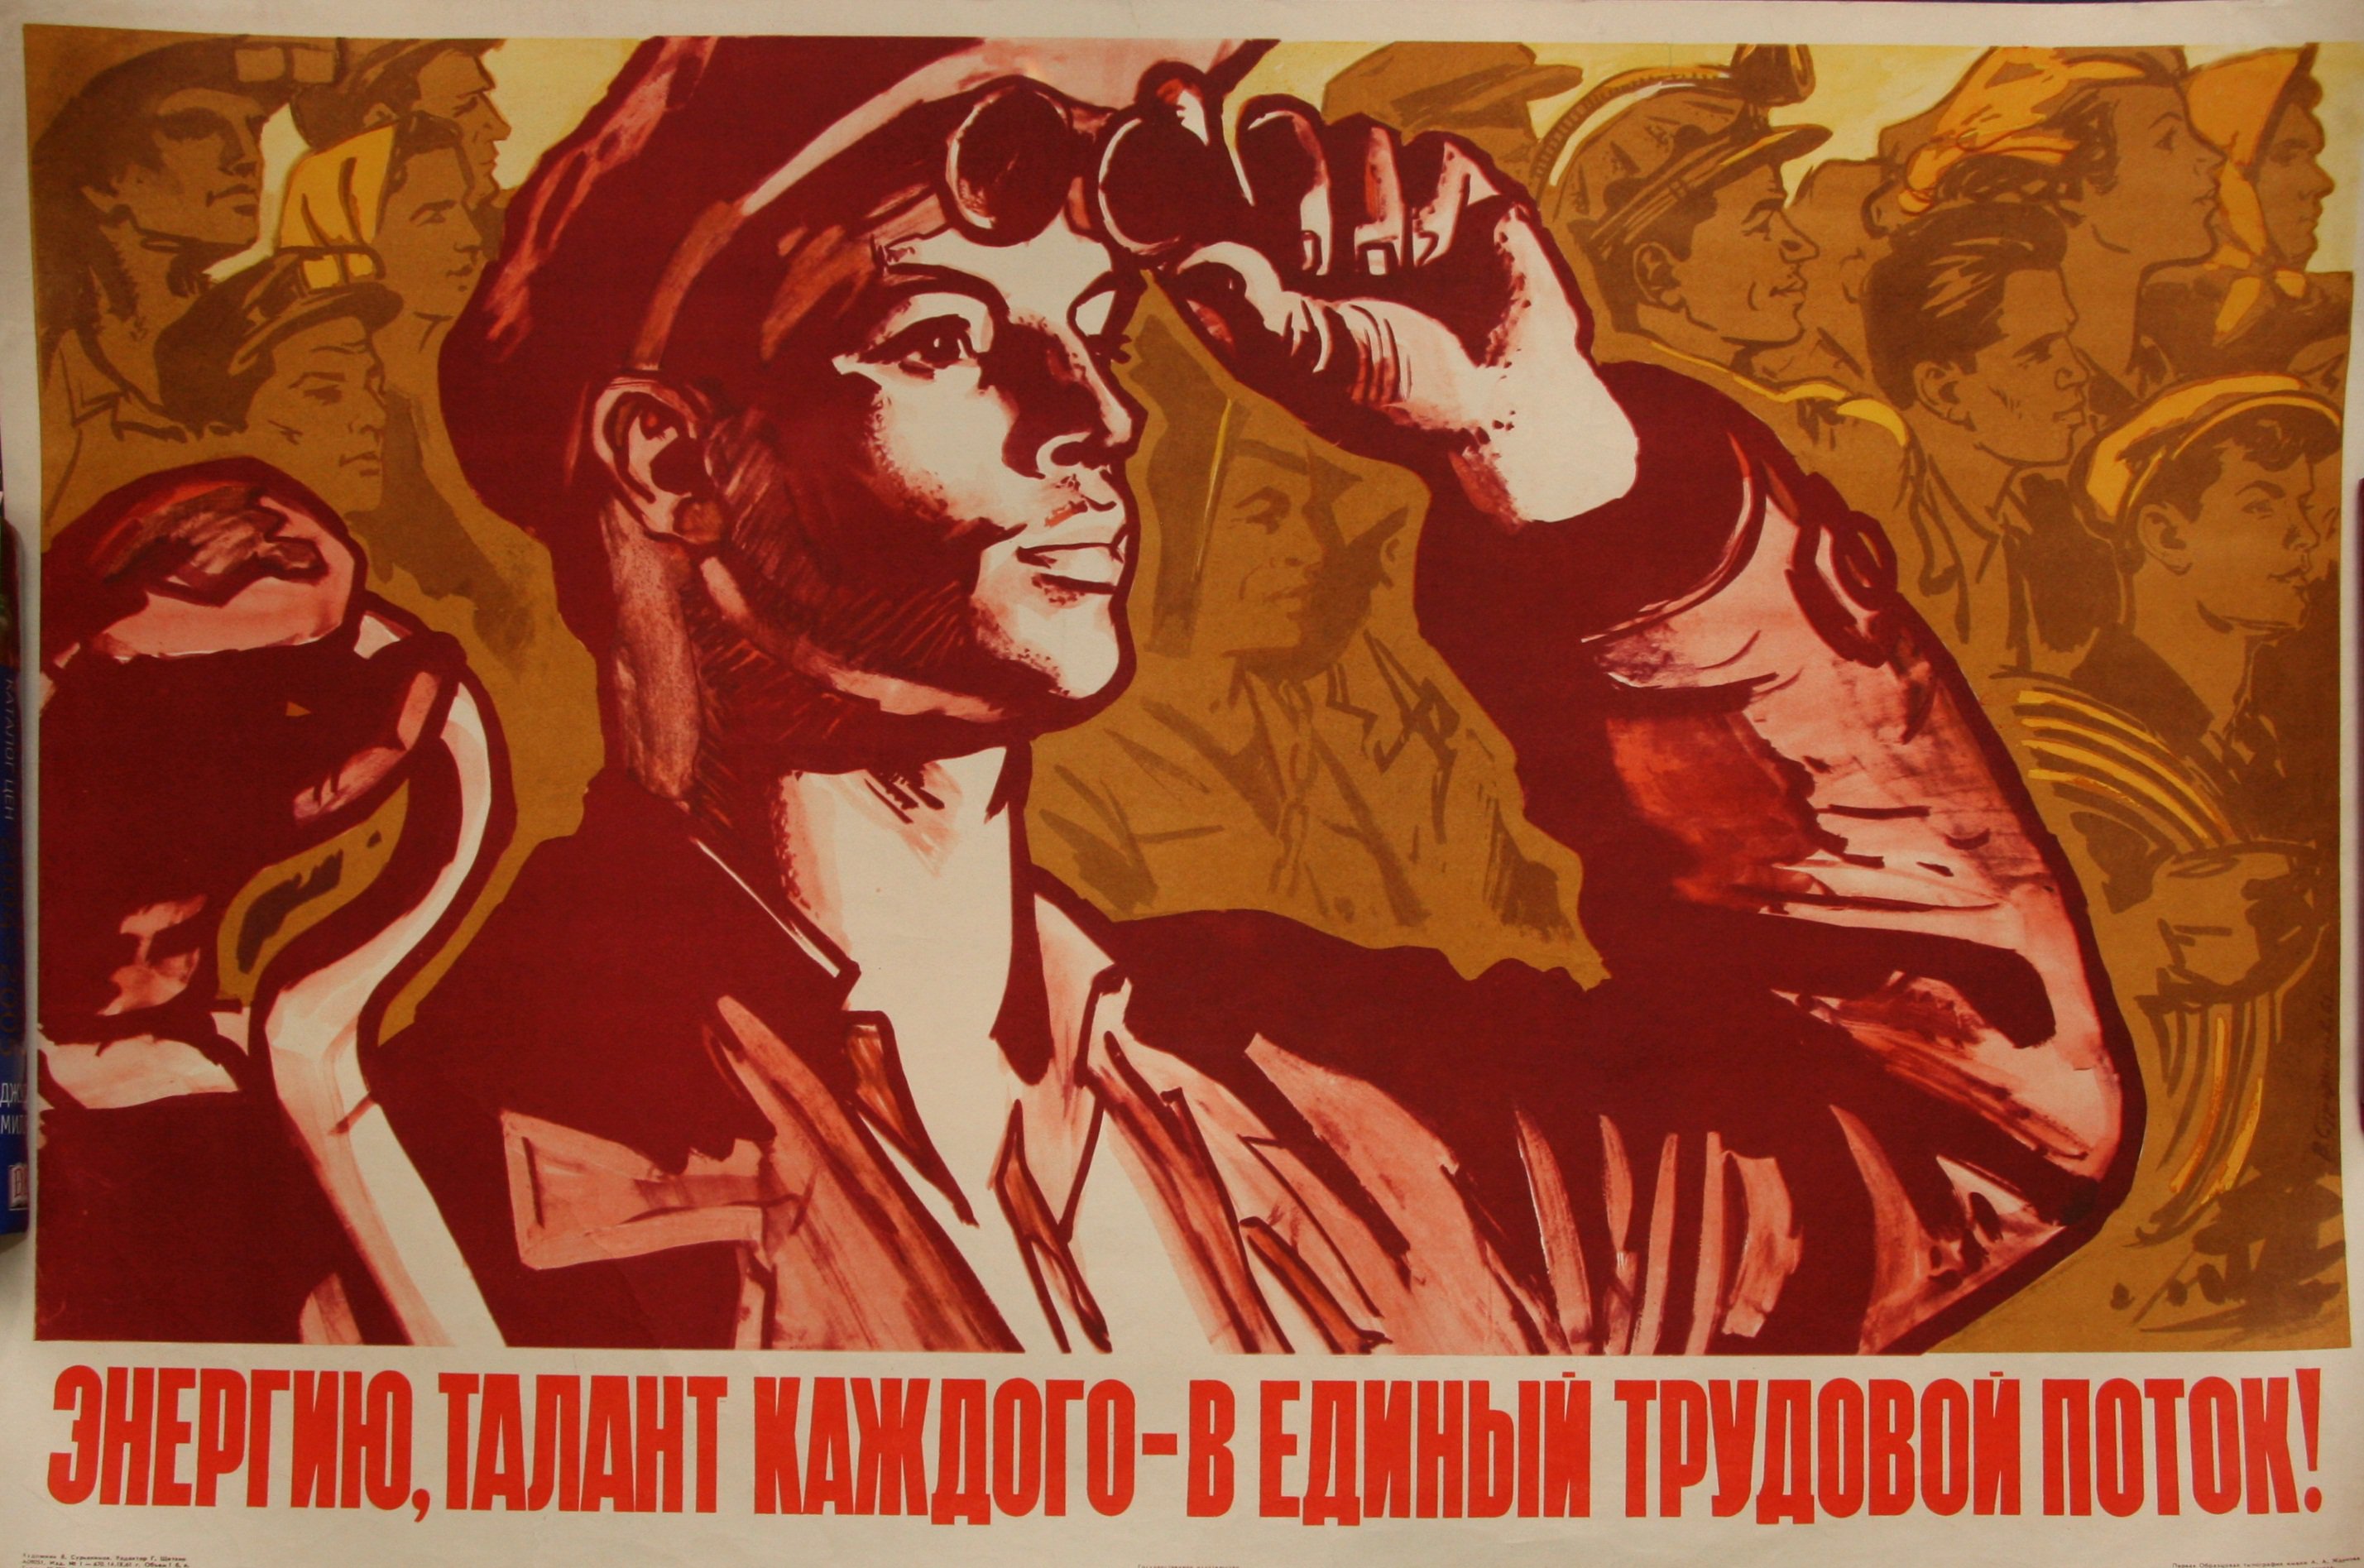 Рабочий класс в советском обществе. Советские плакаты. Коммунистические плакаты. Советские агитационные плакаты. Трудовые плакаты СССР.